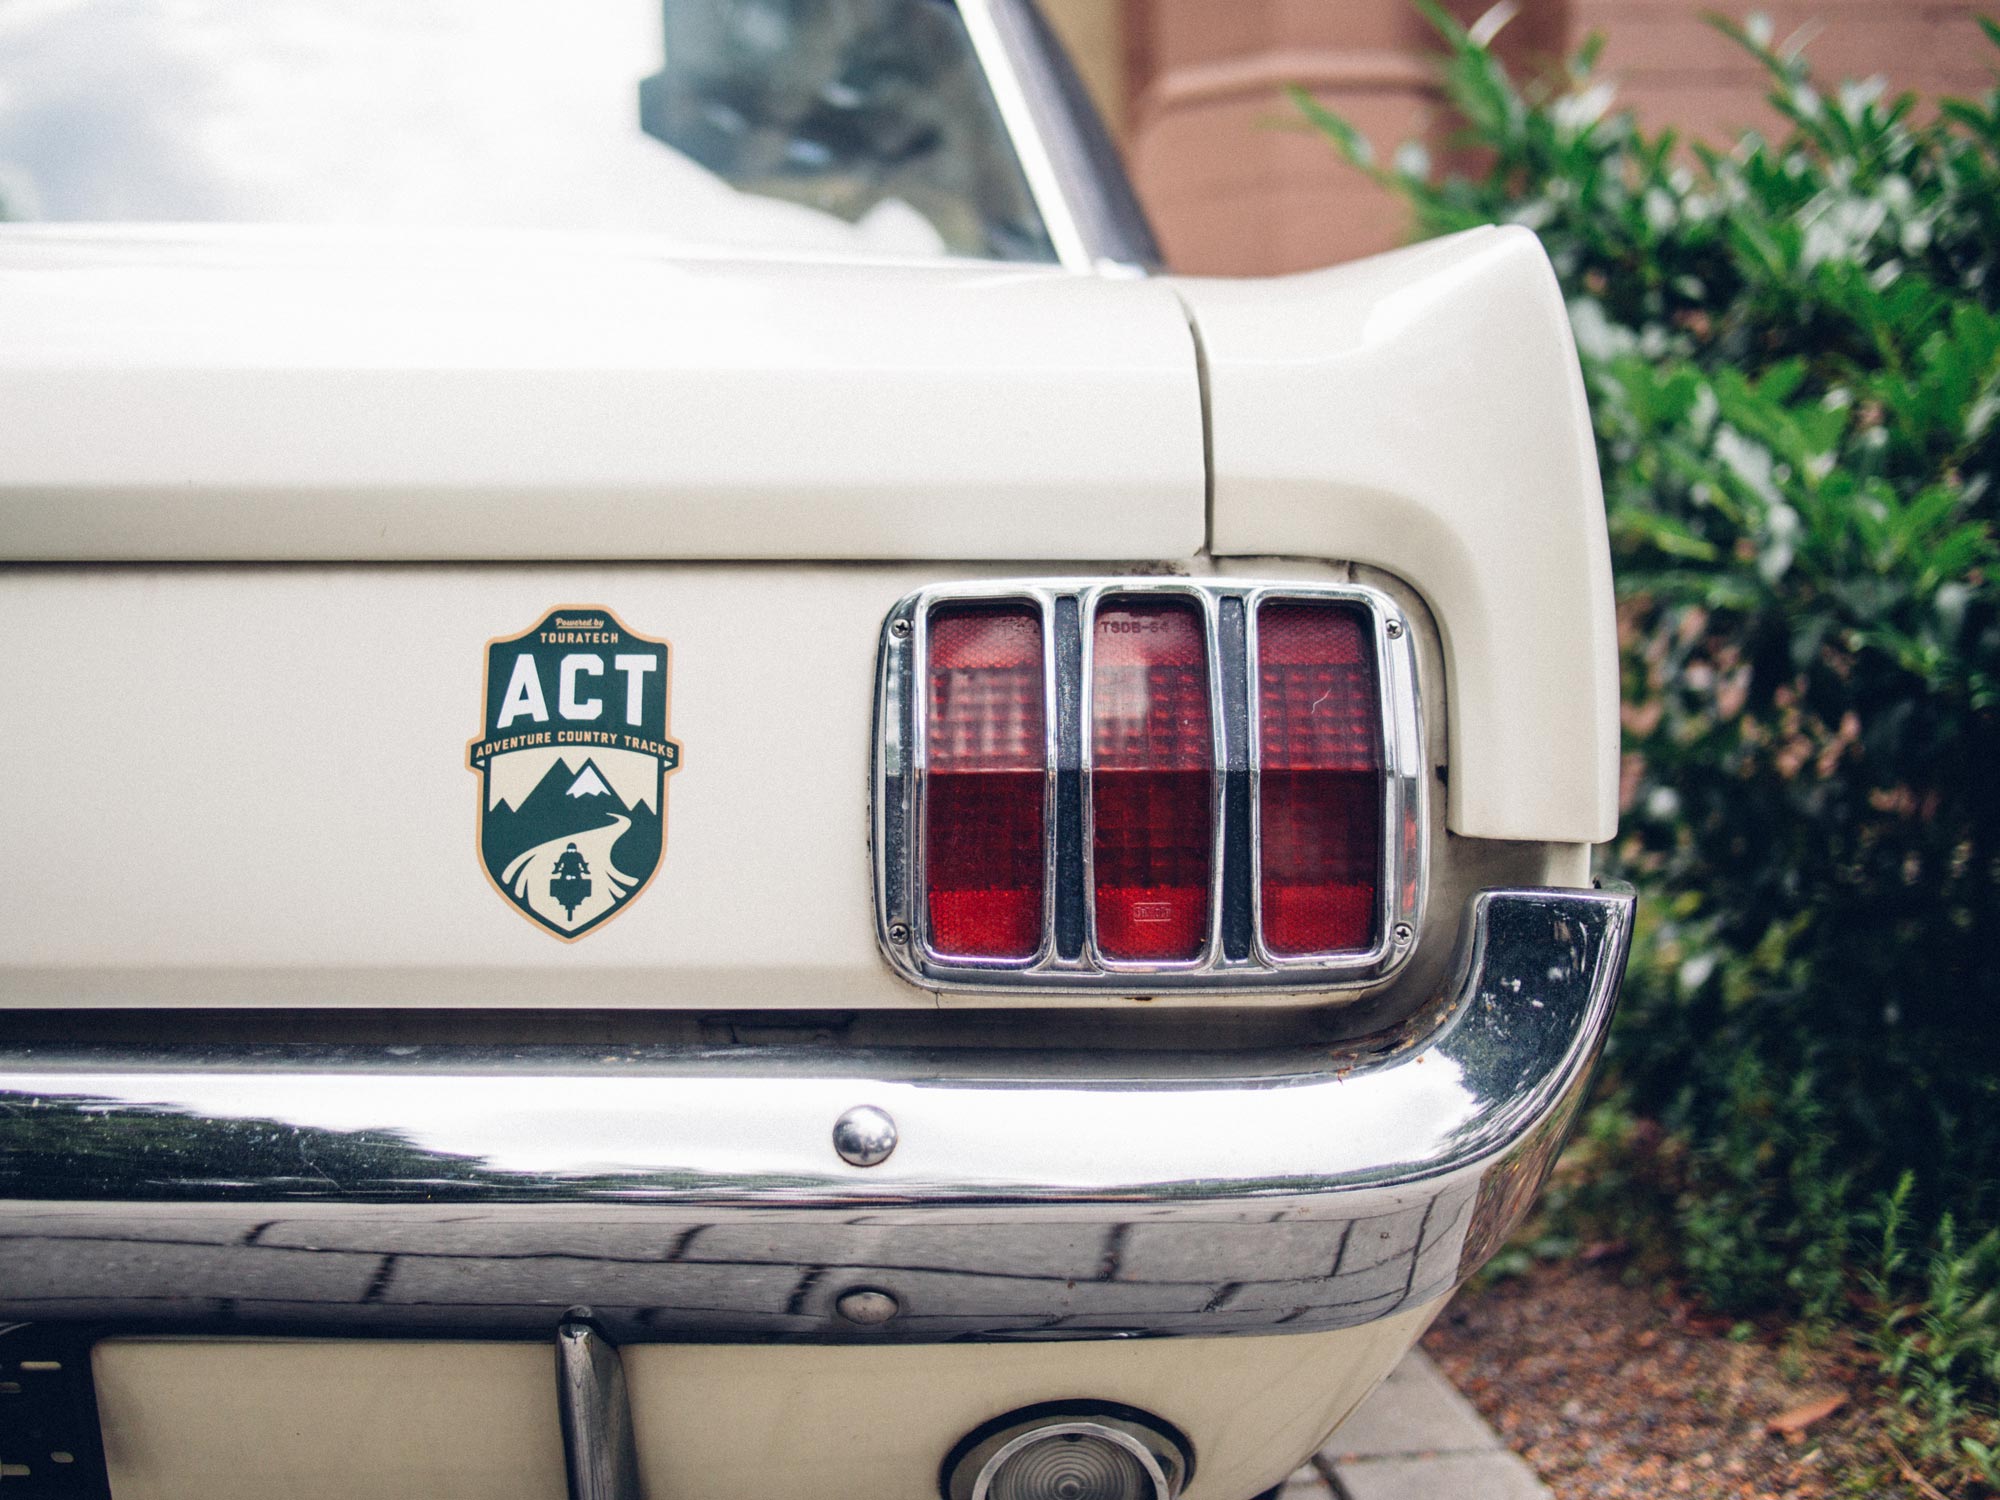 Man sieht das Foto eines Ford Mustang aus den 60er Jahren. Ein Aufkleber mit dem Logo der Adventure Country Tracks von TOURATECH klebt neben dem prägnanten Rücklicht. Das Logo hat eine Wappenform, oben sind die Buchstaben 